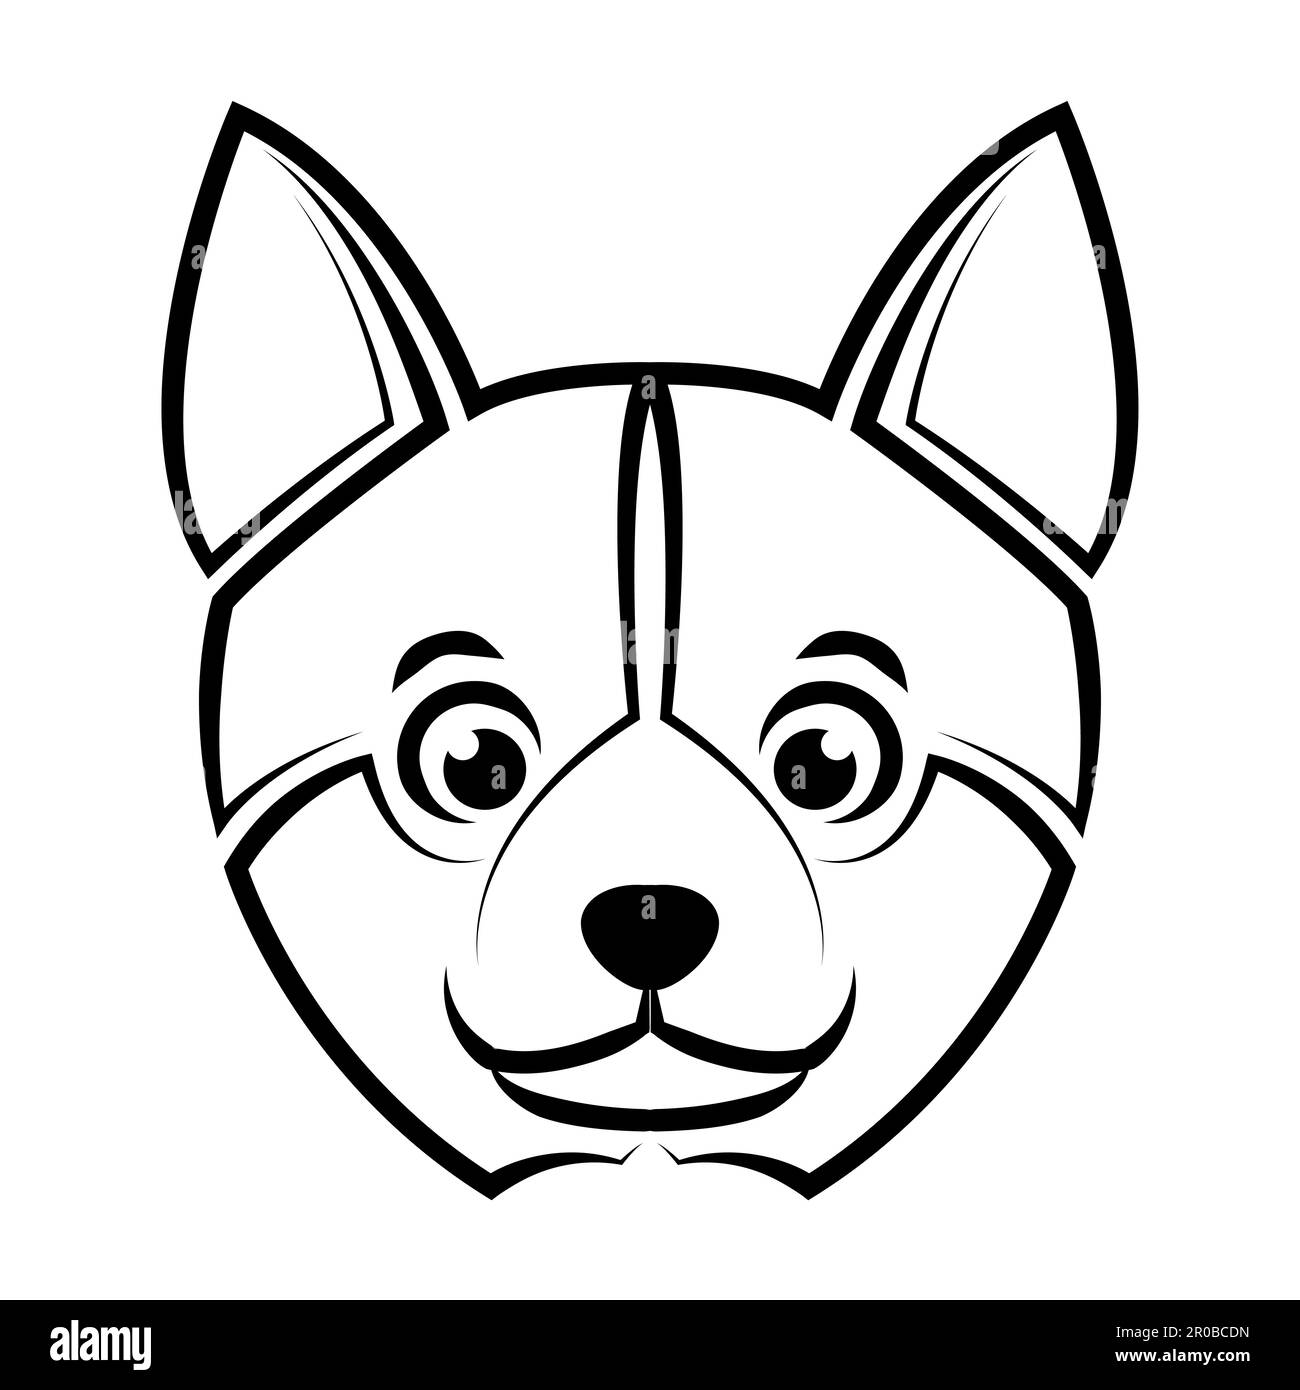 Linea bianca e nera arte della testa di cane shiba. Buon uso per simbolo, mascotte, icona, avatar, tatuaggio, T-Shirt design, logo o qualsiasi disegno. Illustrazione Vettoriale